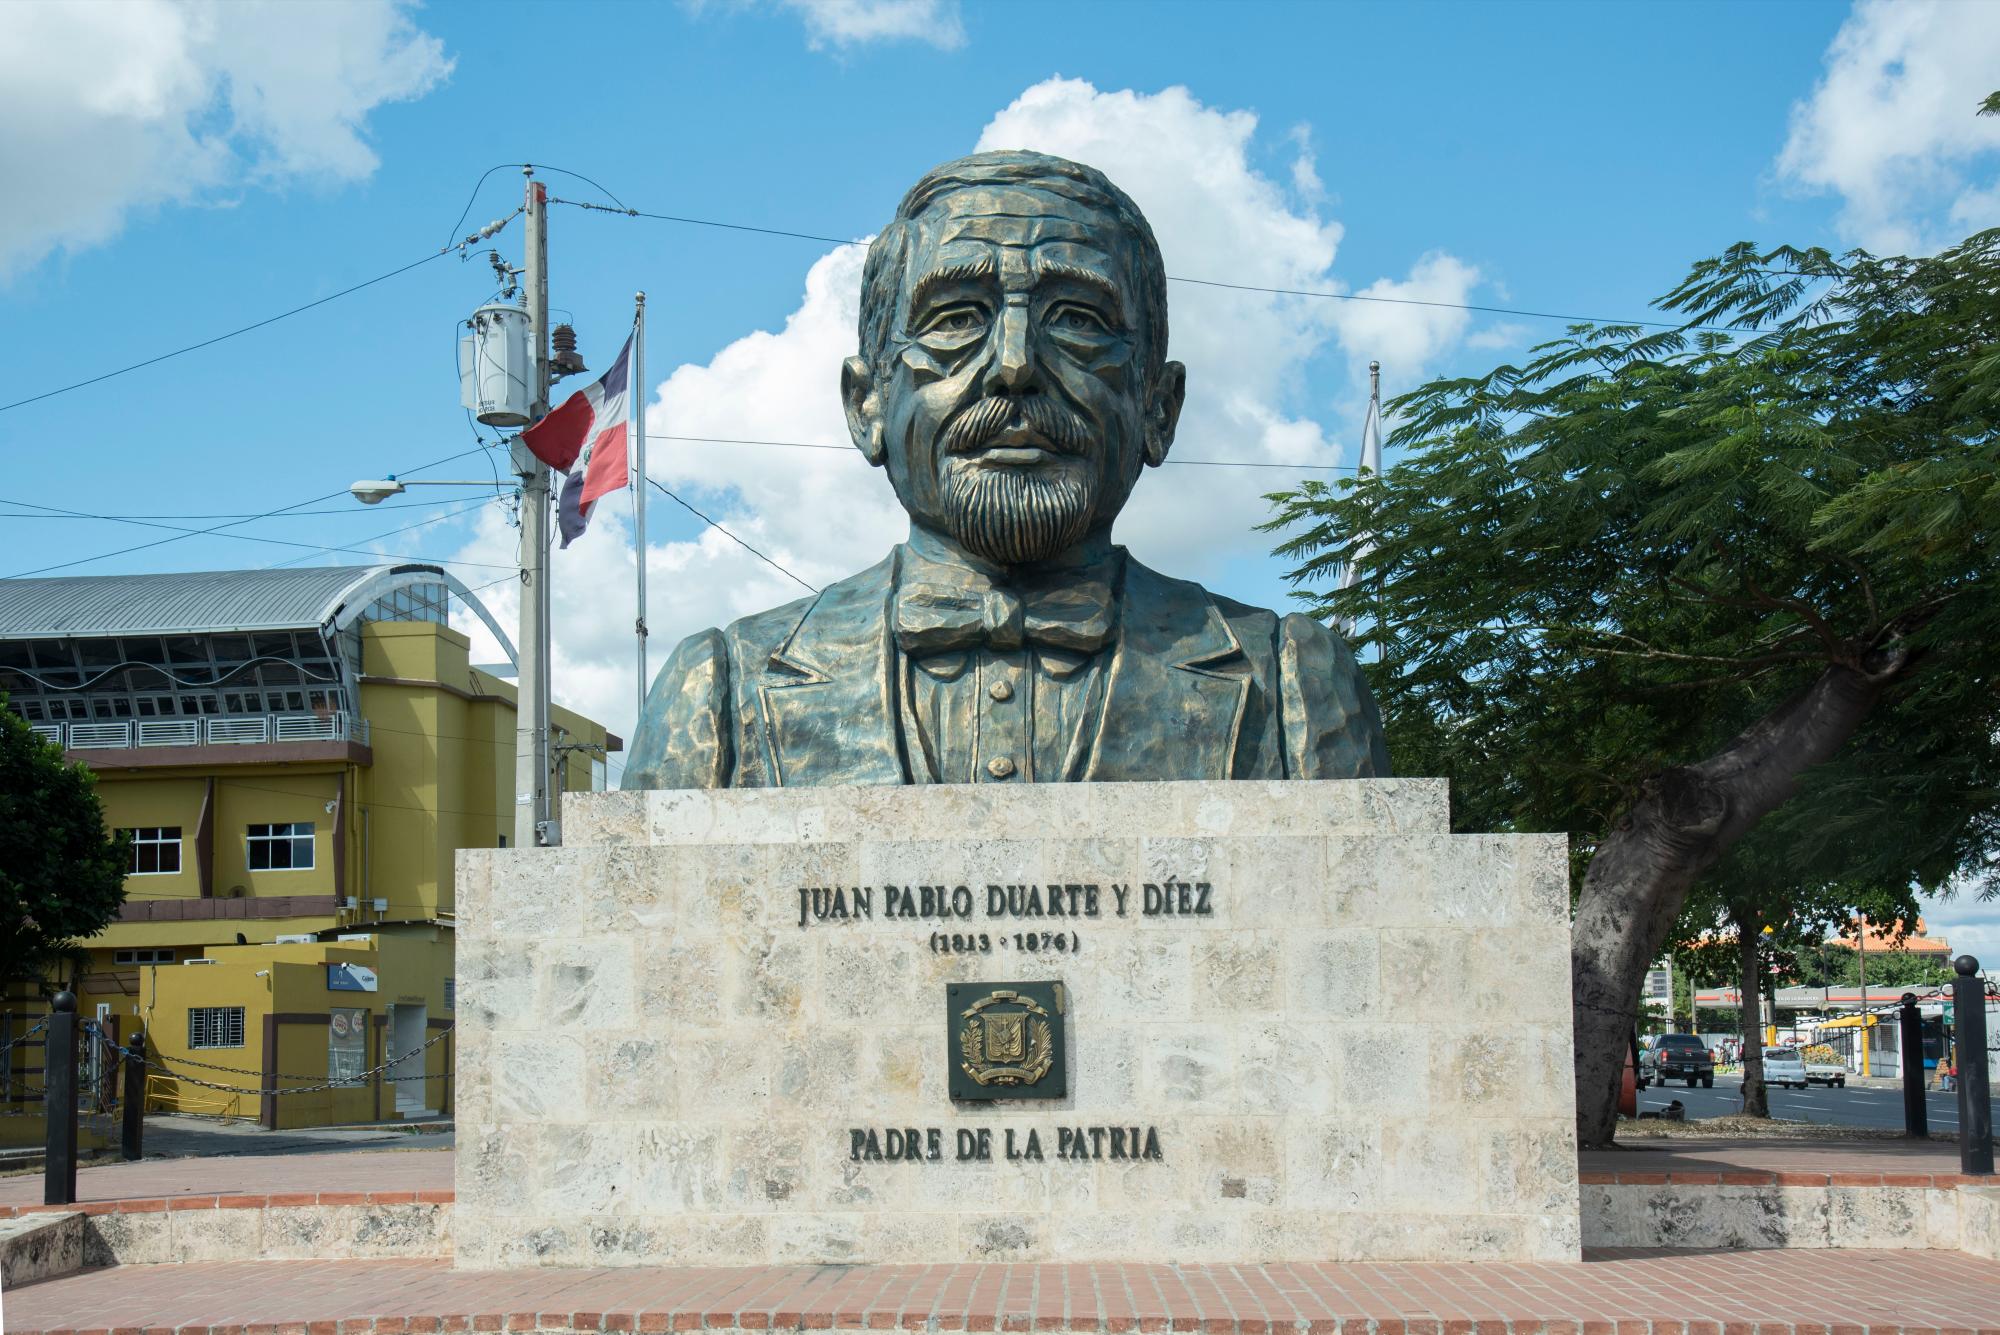 Bustos al Padre de la Patria, Juan Pablo Duarte y Diez